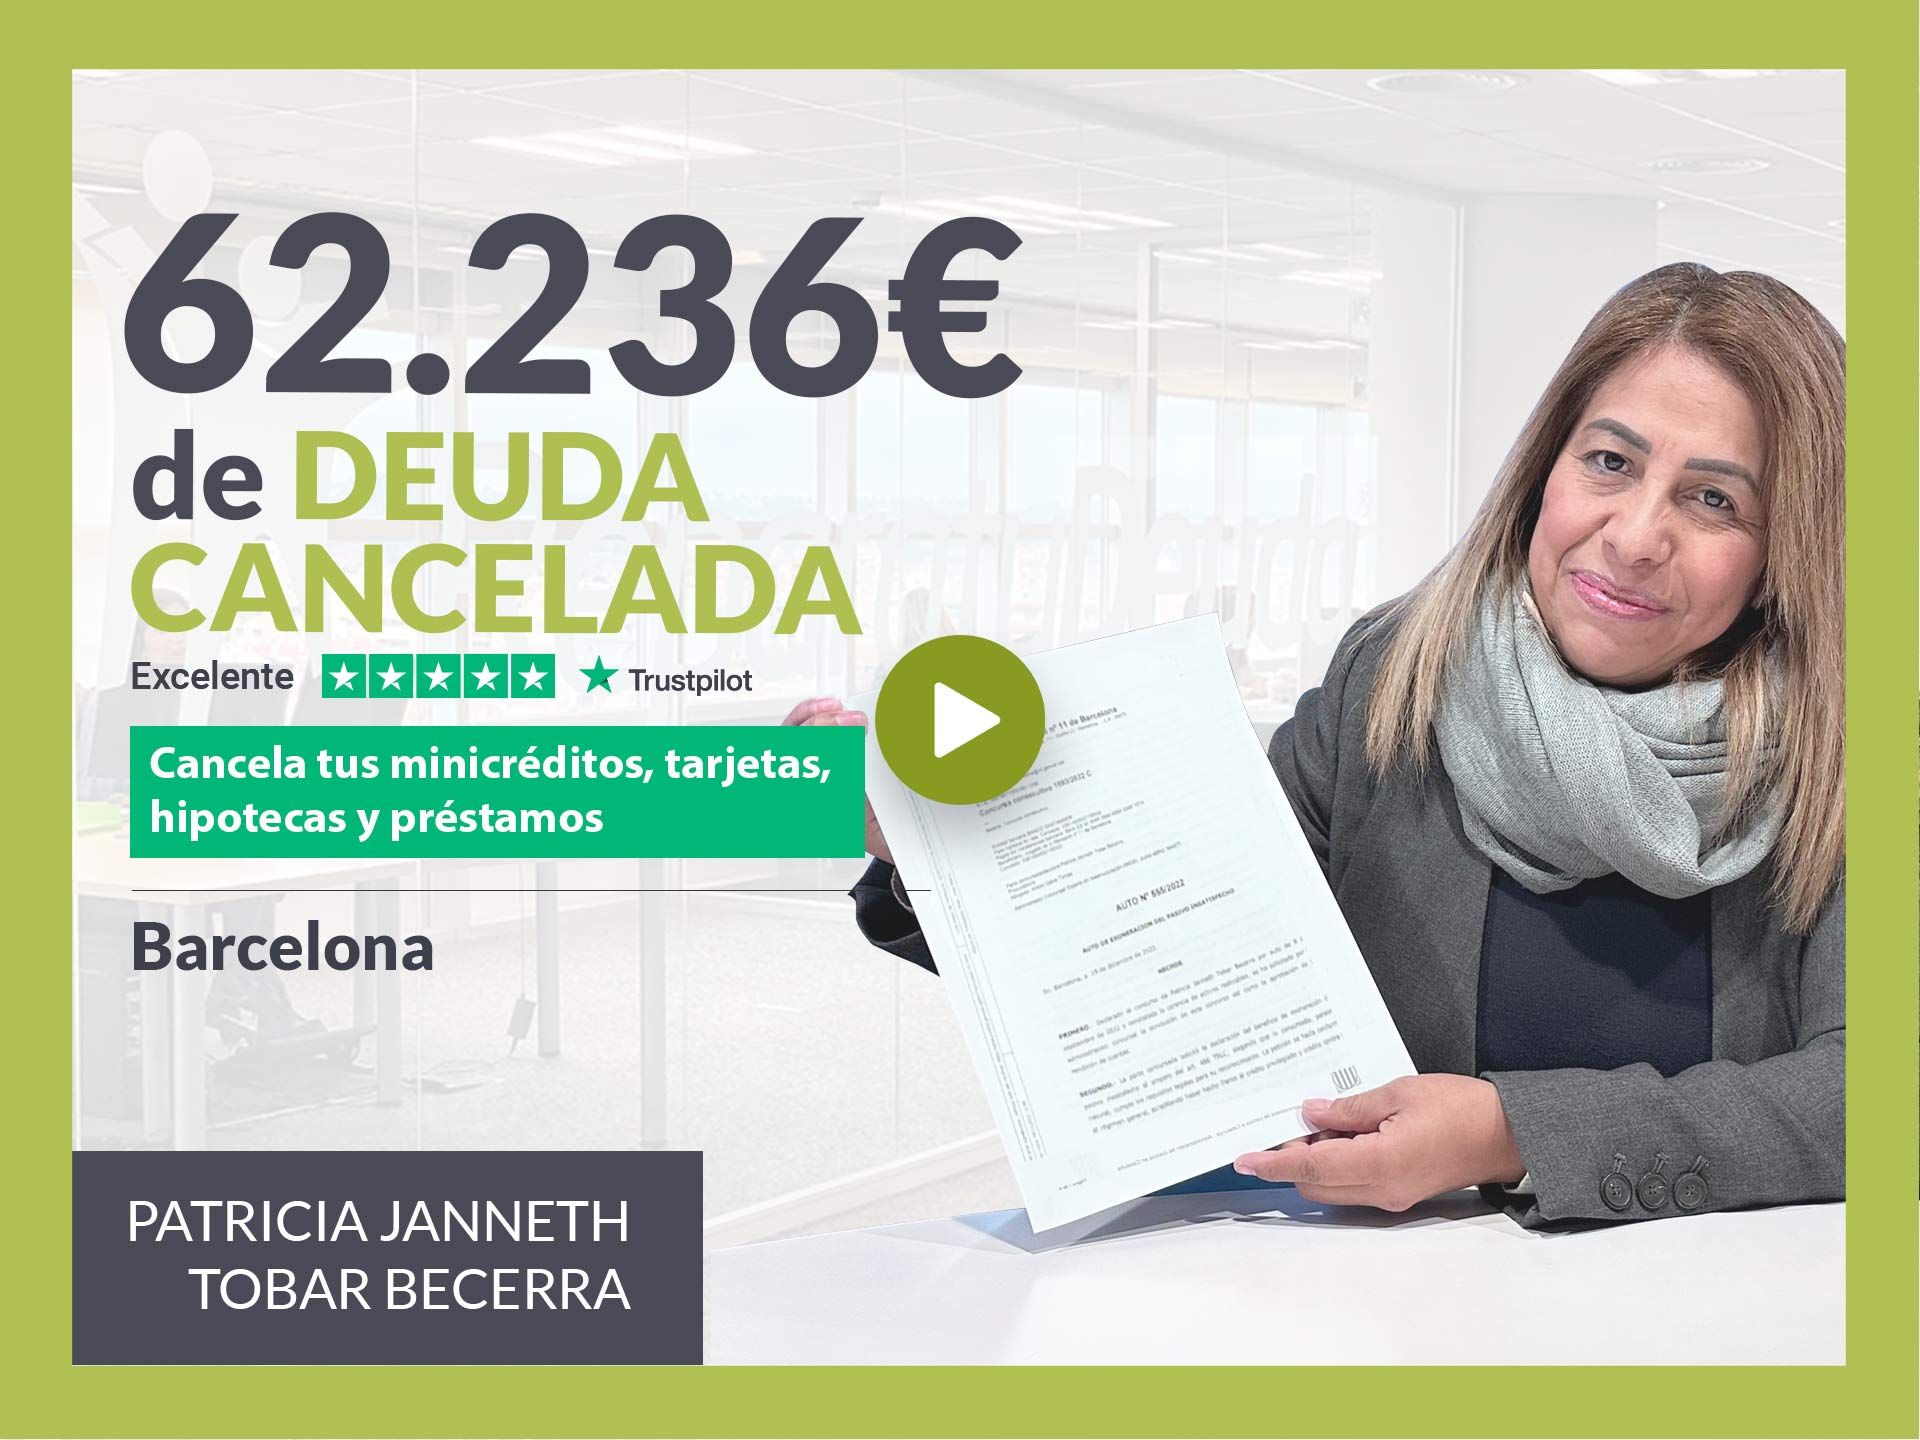 Repara tu Deuda Abogados cancela 62.236? en Barcelona (Catalunya) con la Ley de Segunda Oportunidad